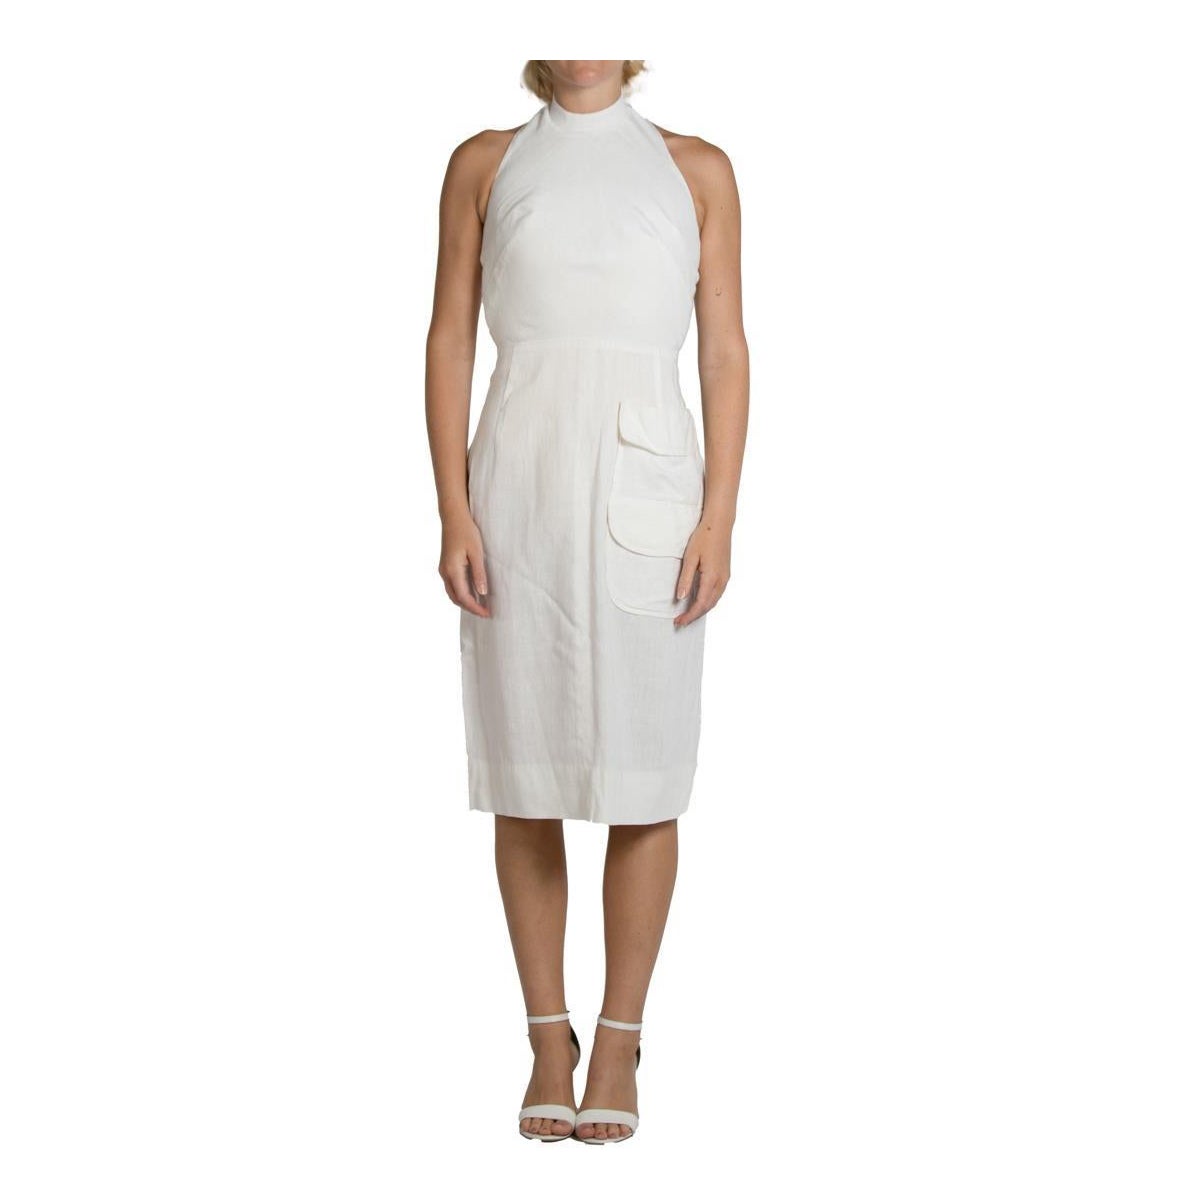 1990S White Linen High Neck Halter Top Dress For Sale